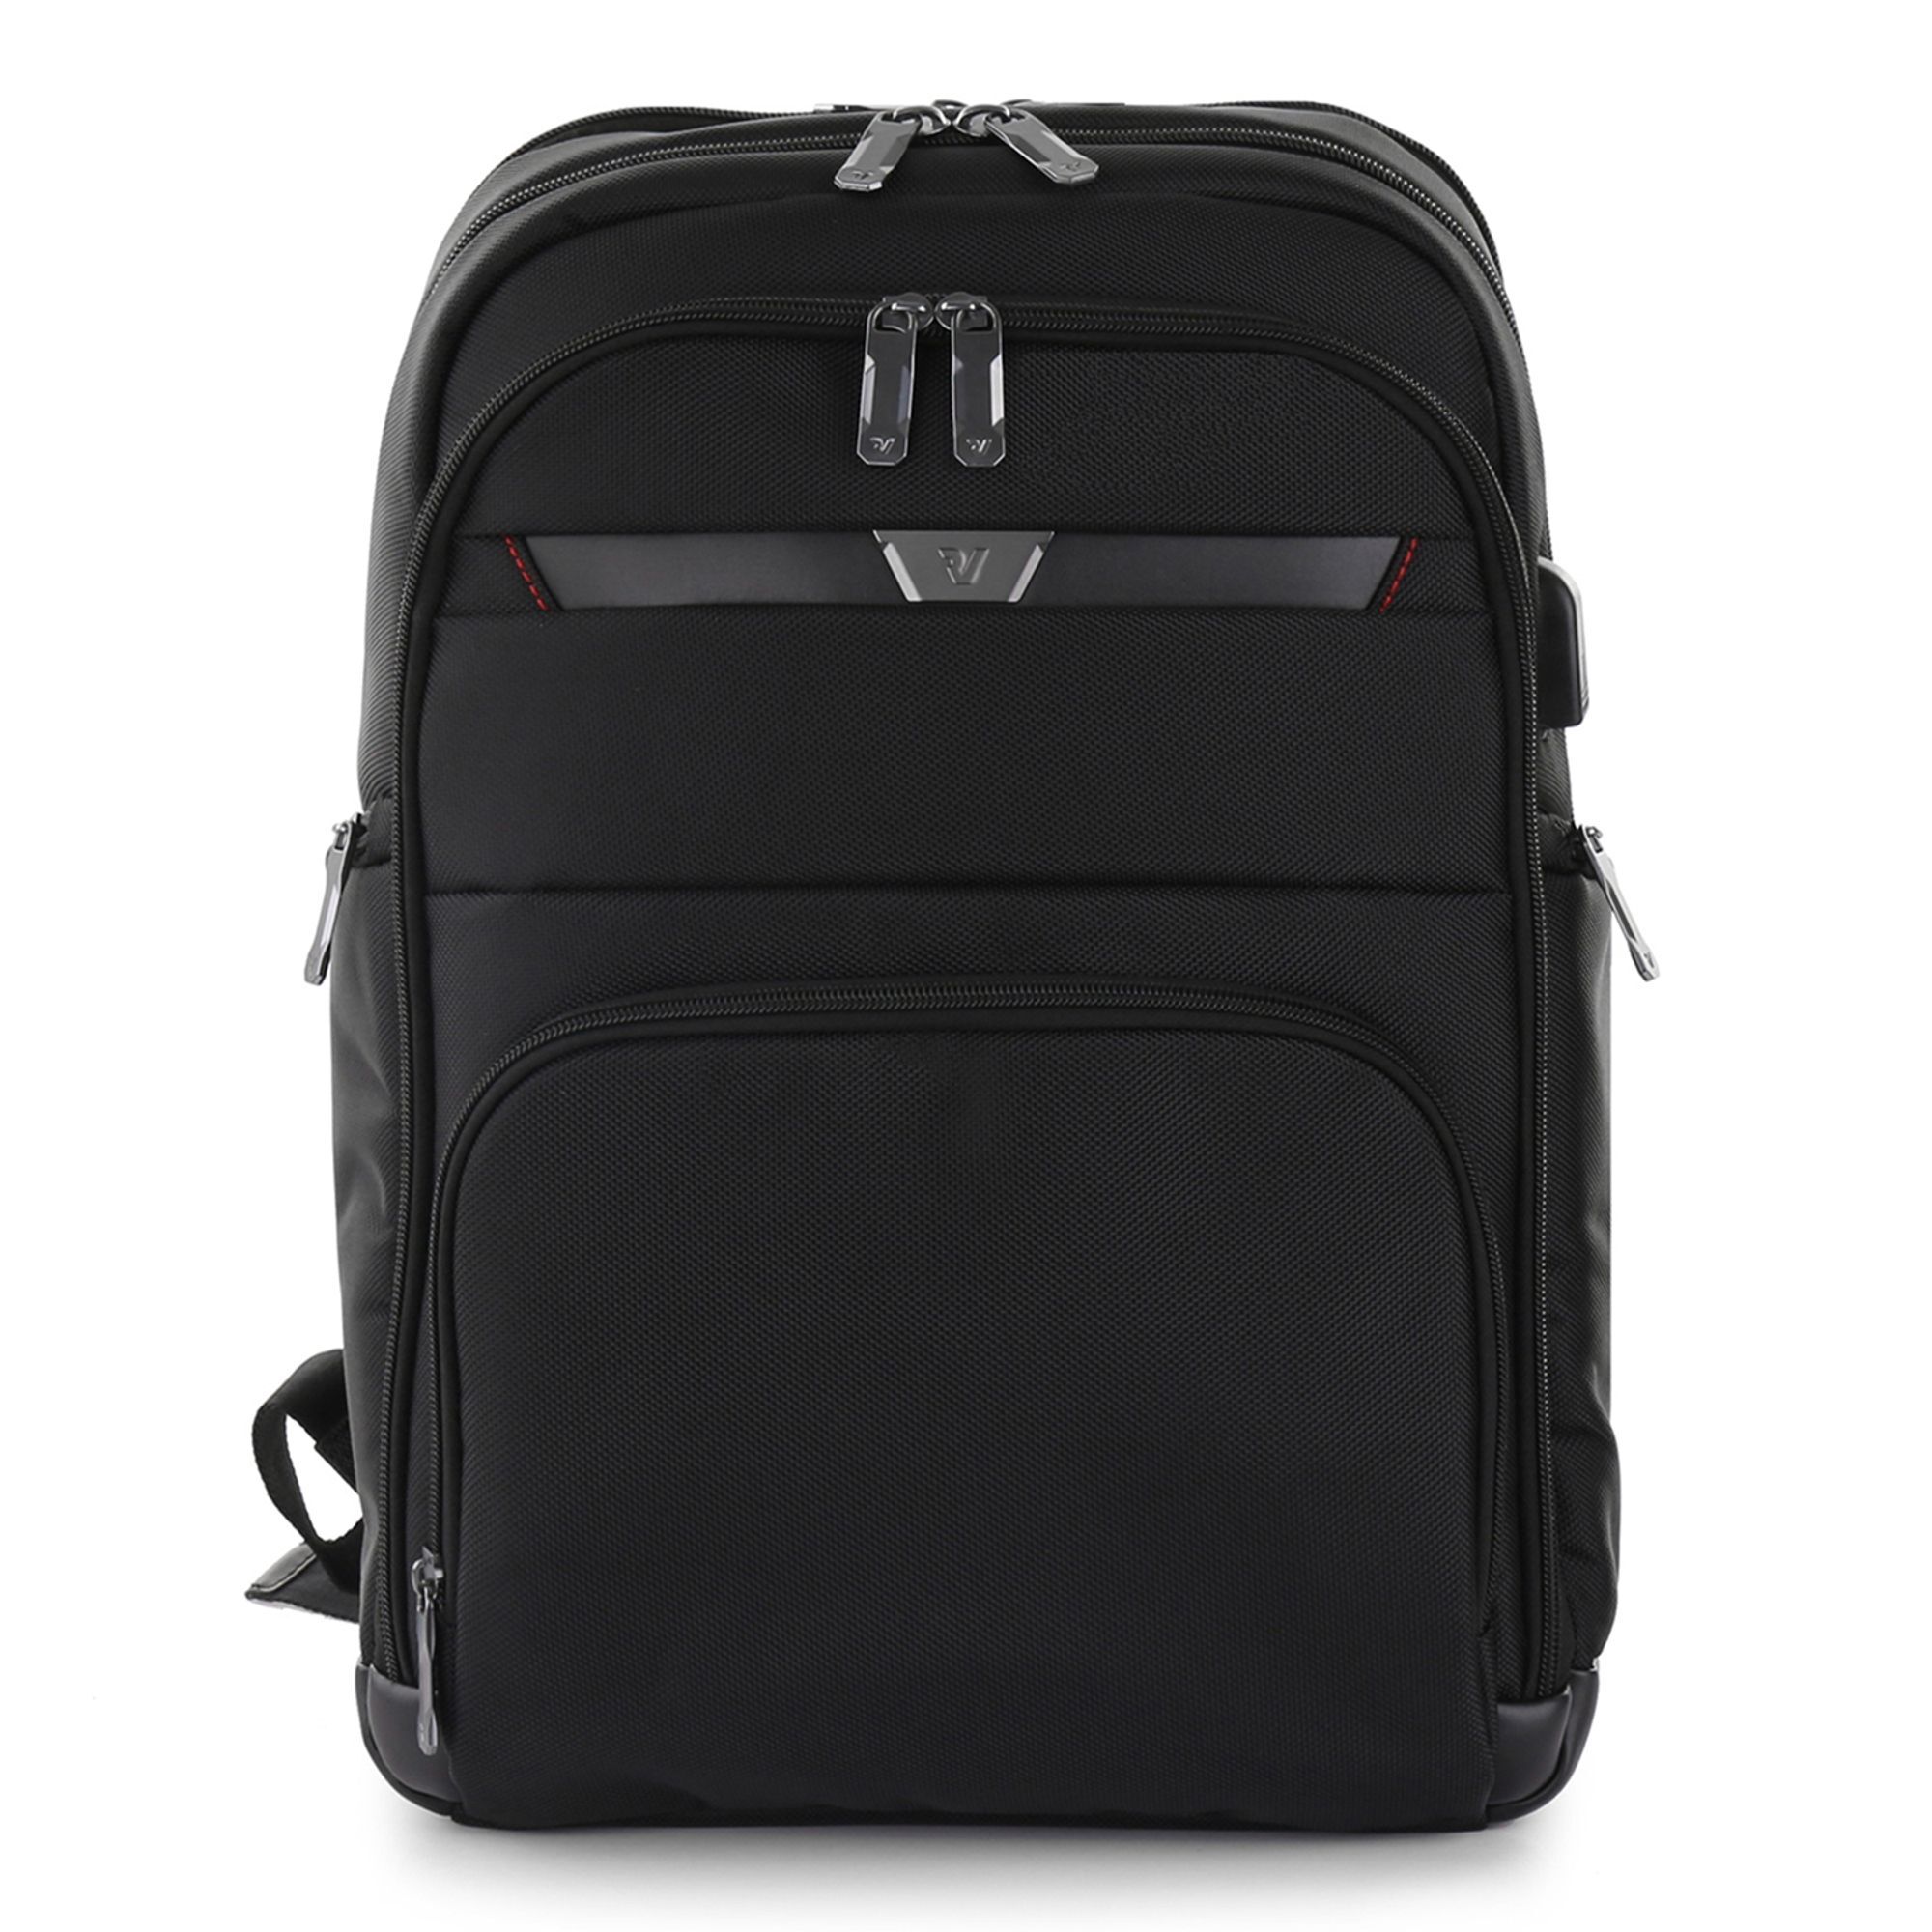 Рюкзак Roncato Biz 4.0 41,5 cm Laptopfach, черный